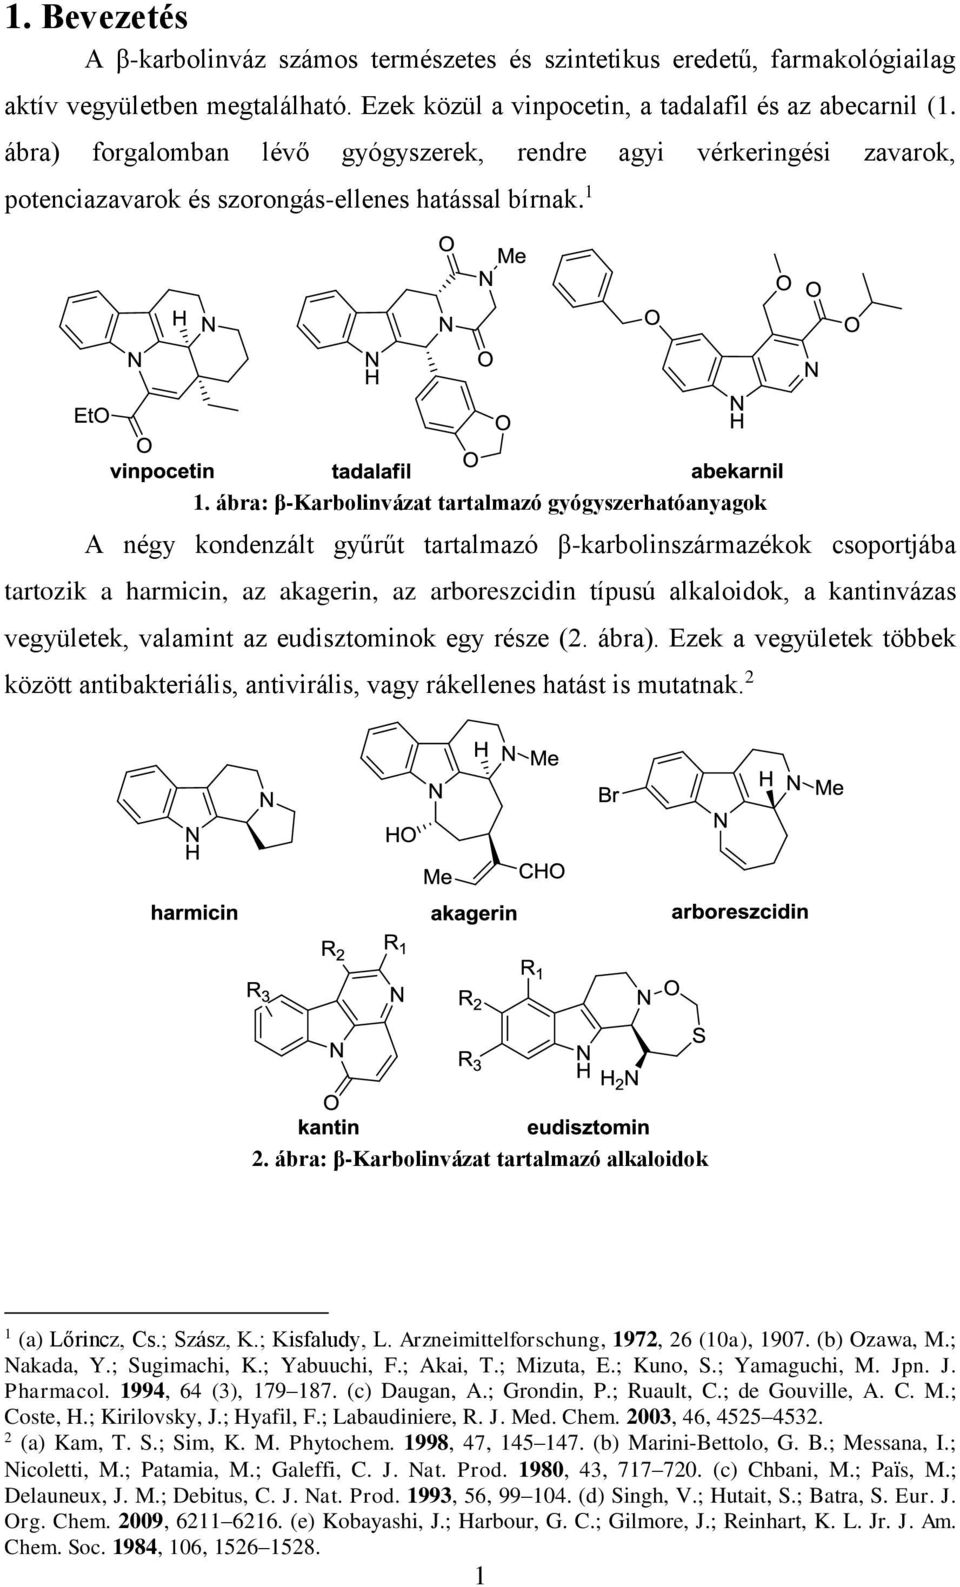 ábra: β-karbolinvázat tartalmazó gyógyszerhatóanyagok A négy kondenzált gyűrűt tartalmazó β-karbolinszármazékok csoportjába tartozik a harmicin, az akagerin, az arboreszcidin típusú alkaloidok, a